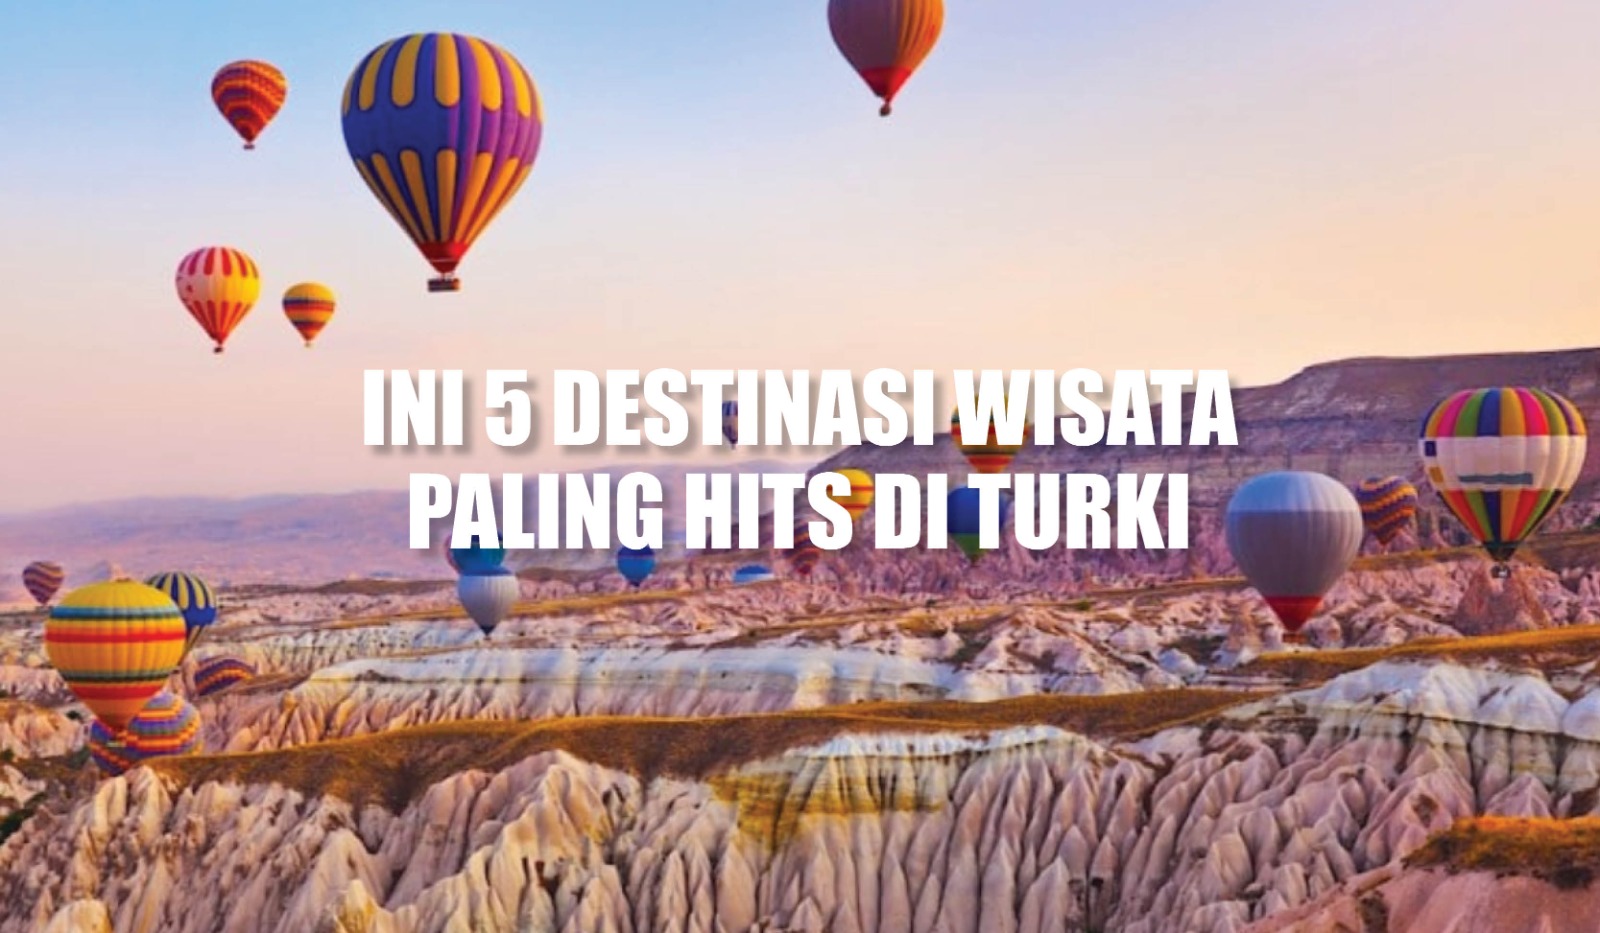 Wajib Masuk List Kamu! Ini 5 Destinasi Wisata Paling Hits di Turki, Tawarkan Pesona Alam yang Menakjubkan